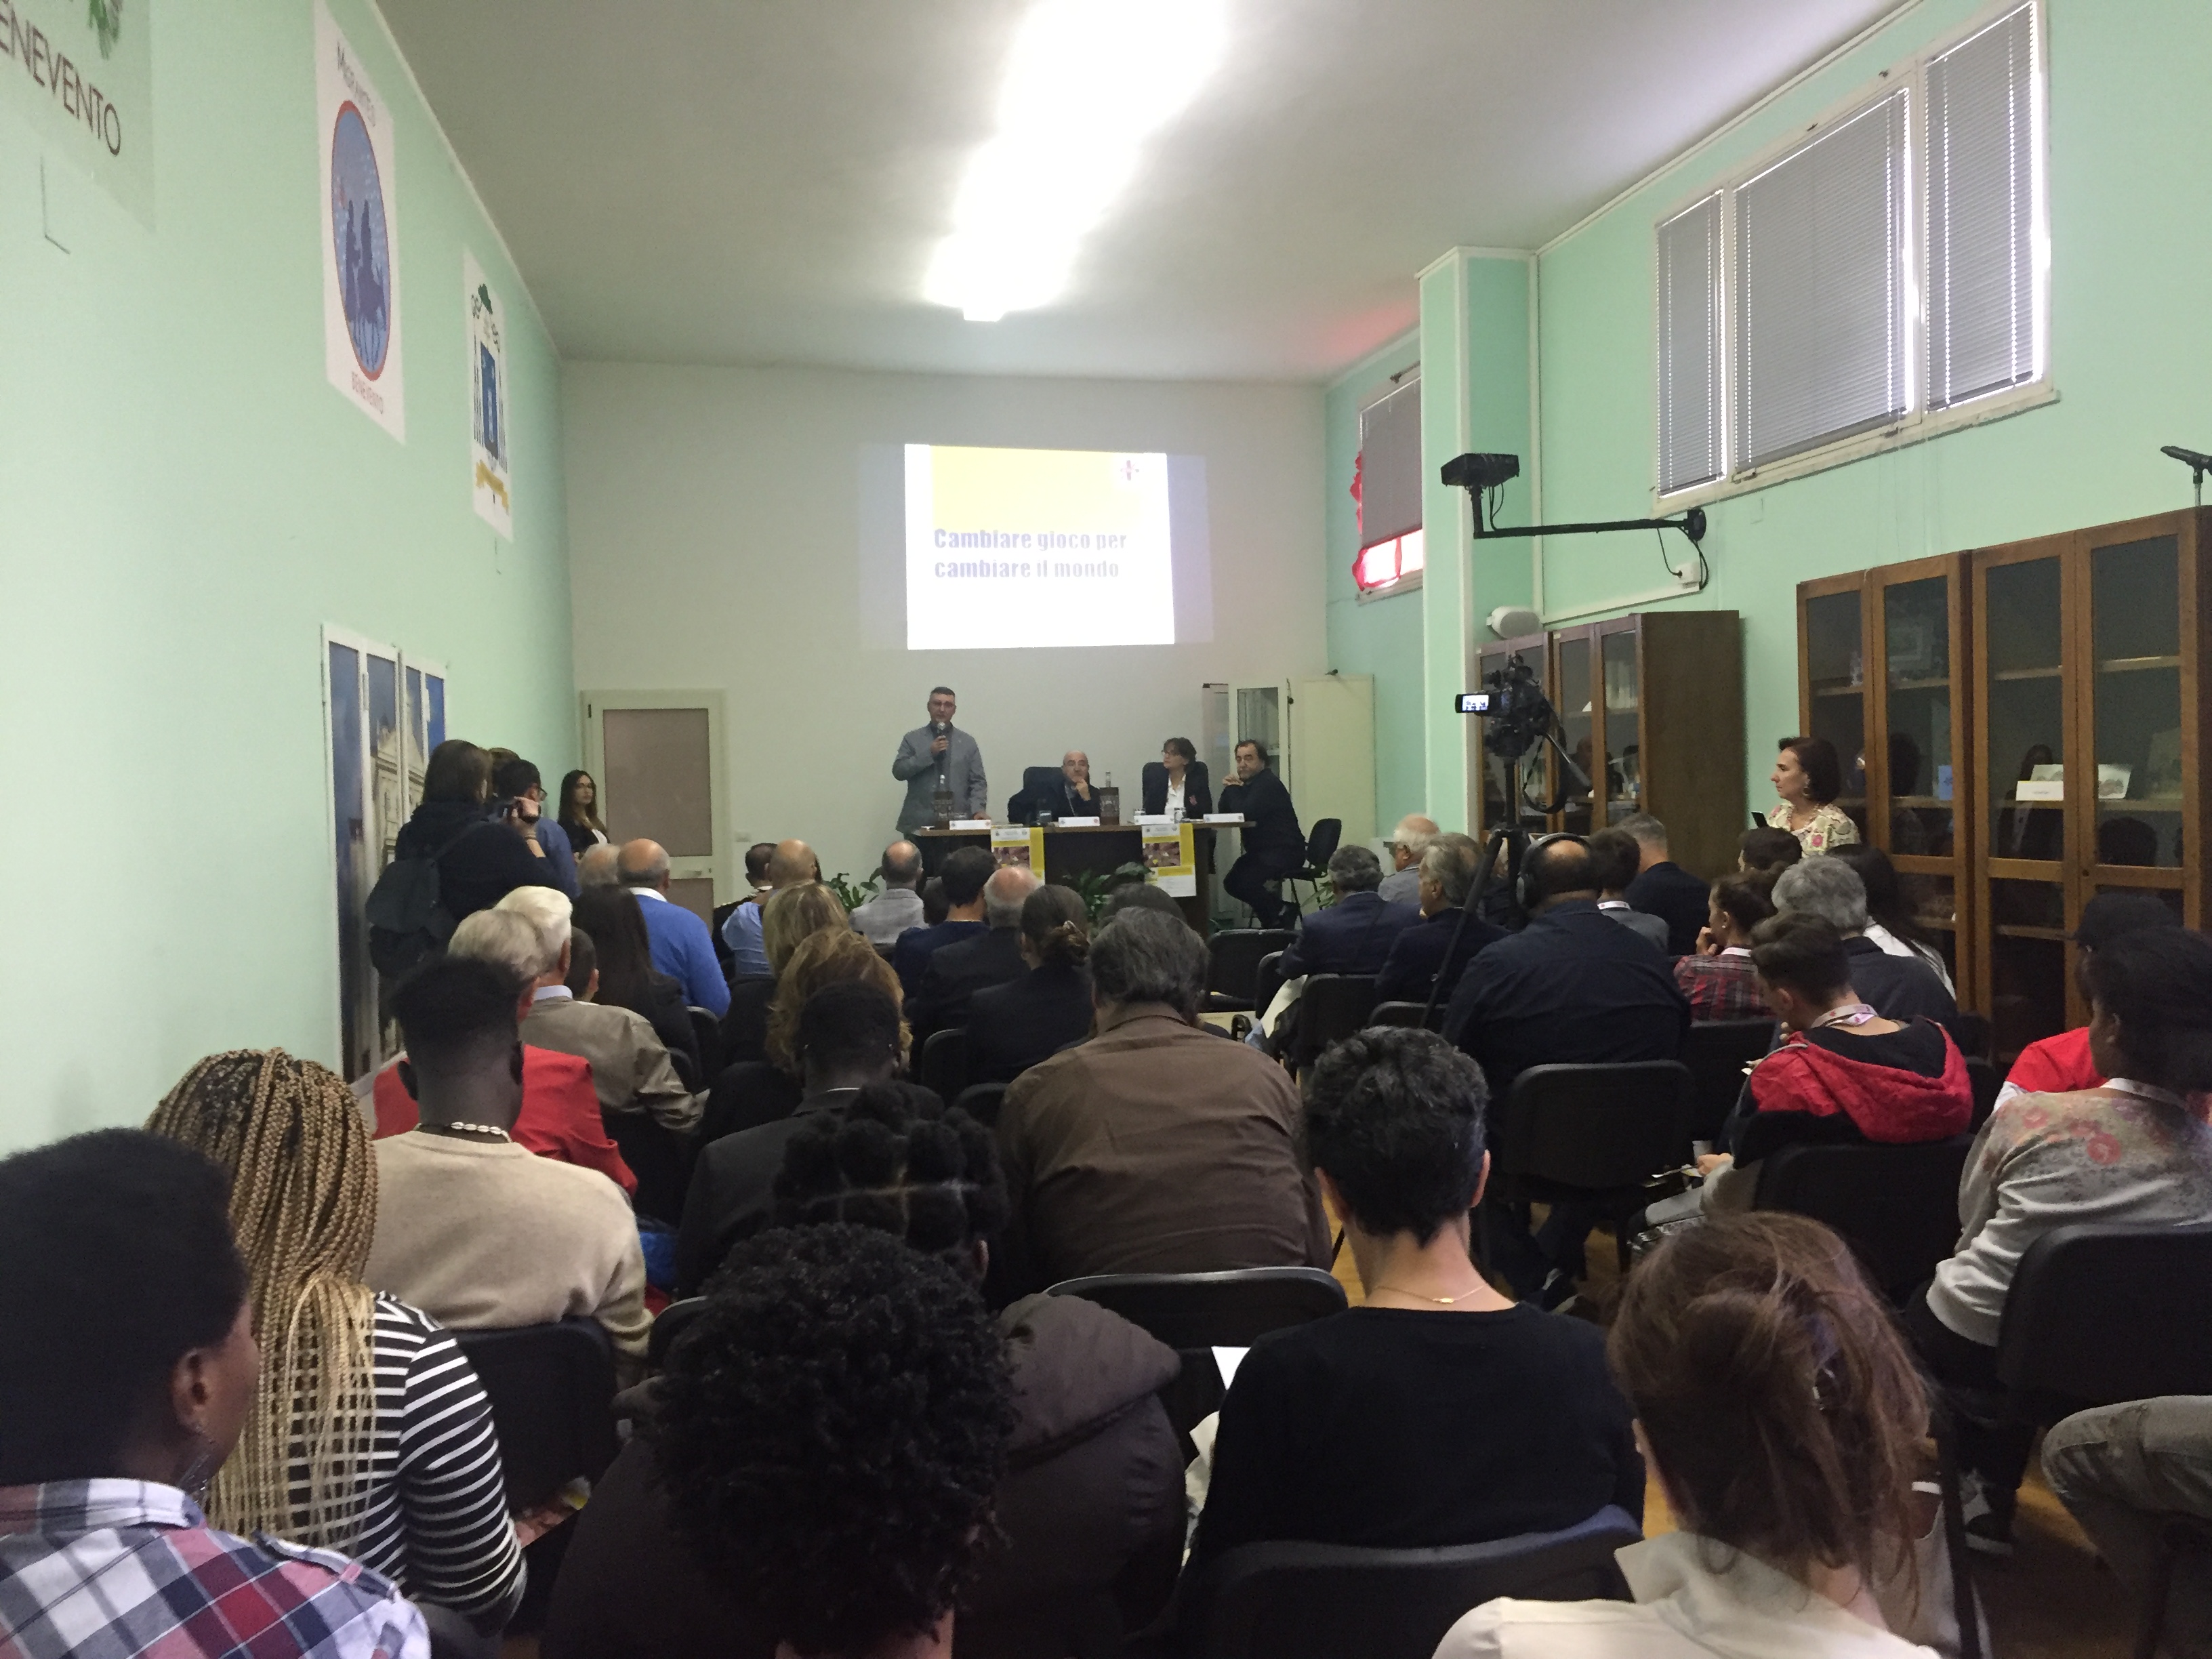 Benevento| Caritas: presentato il Dossier 2019 sull’esclusione sociale